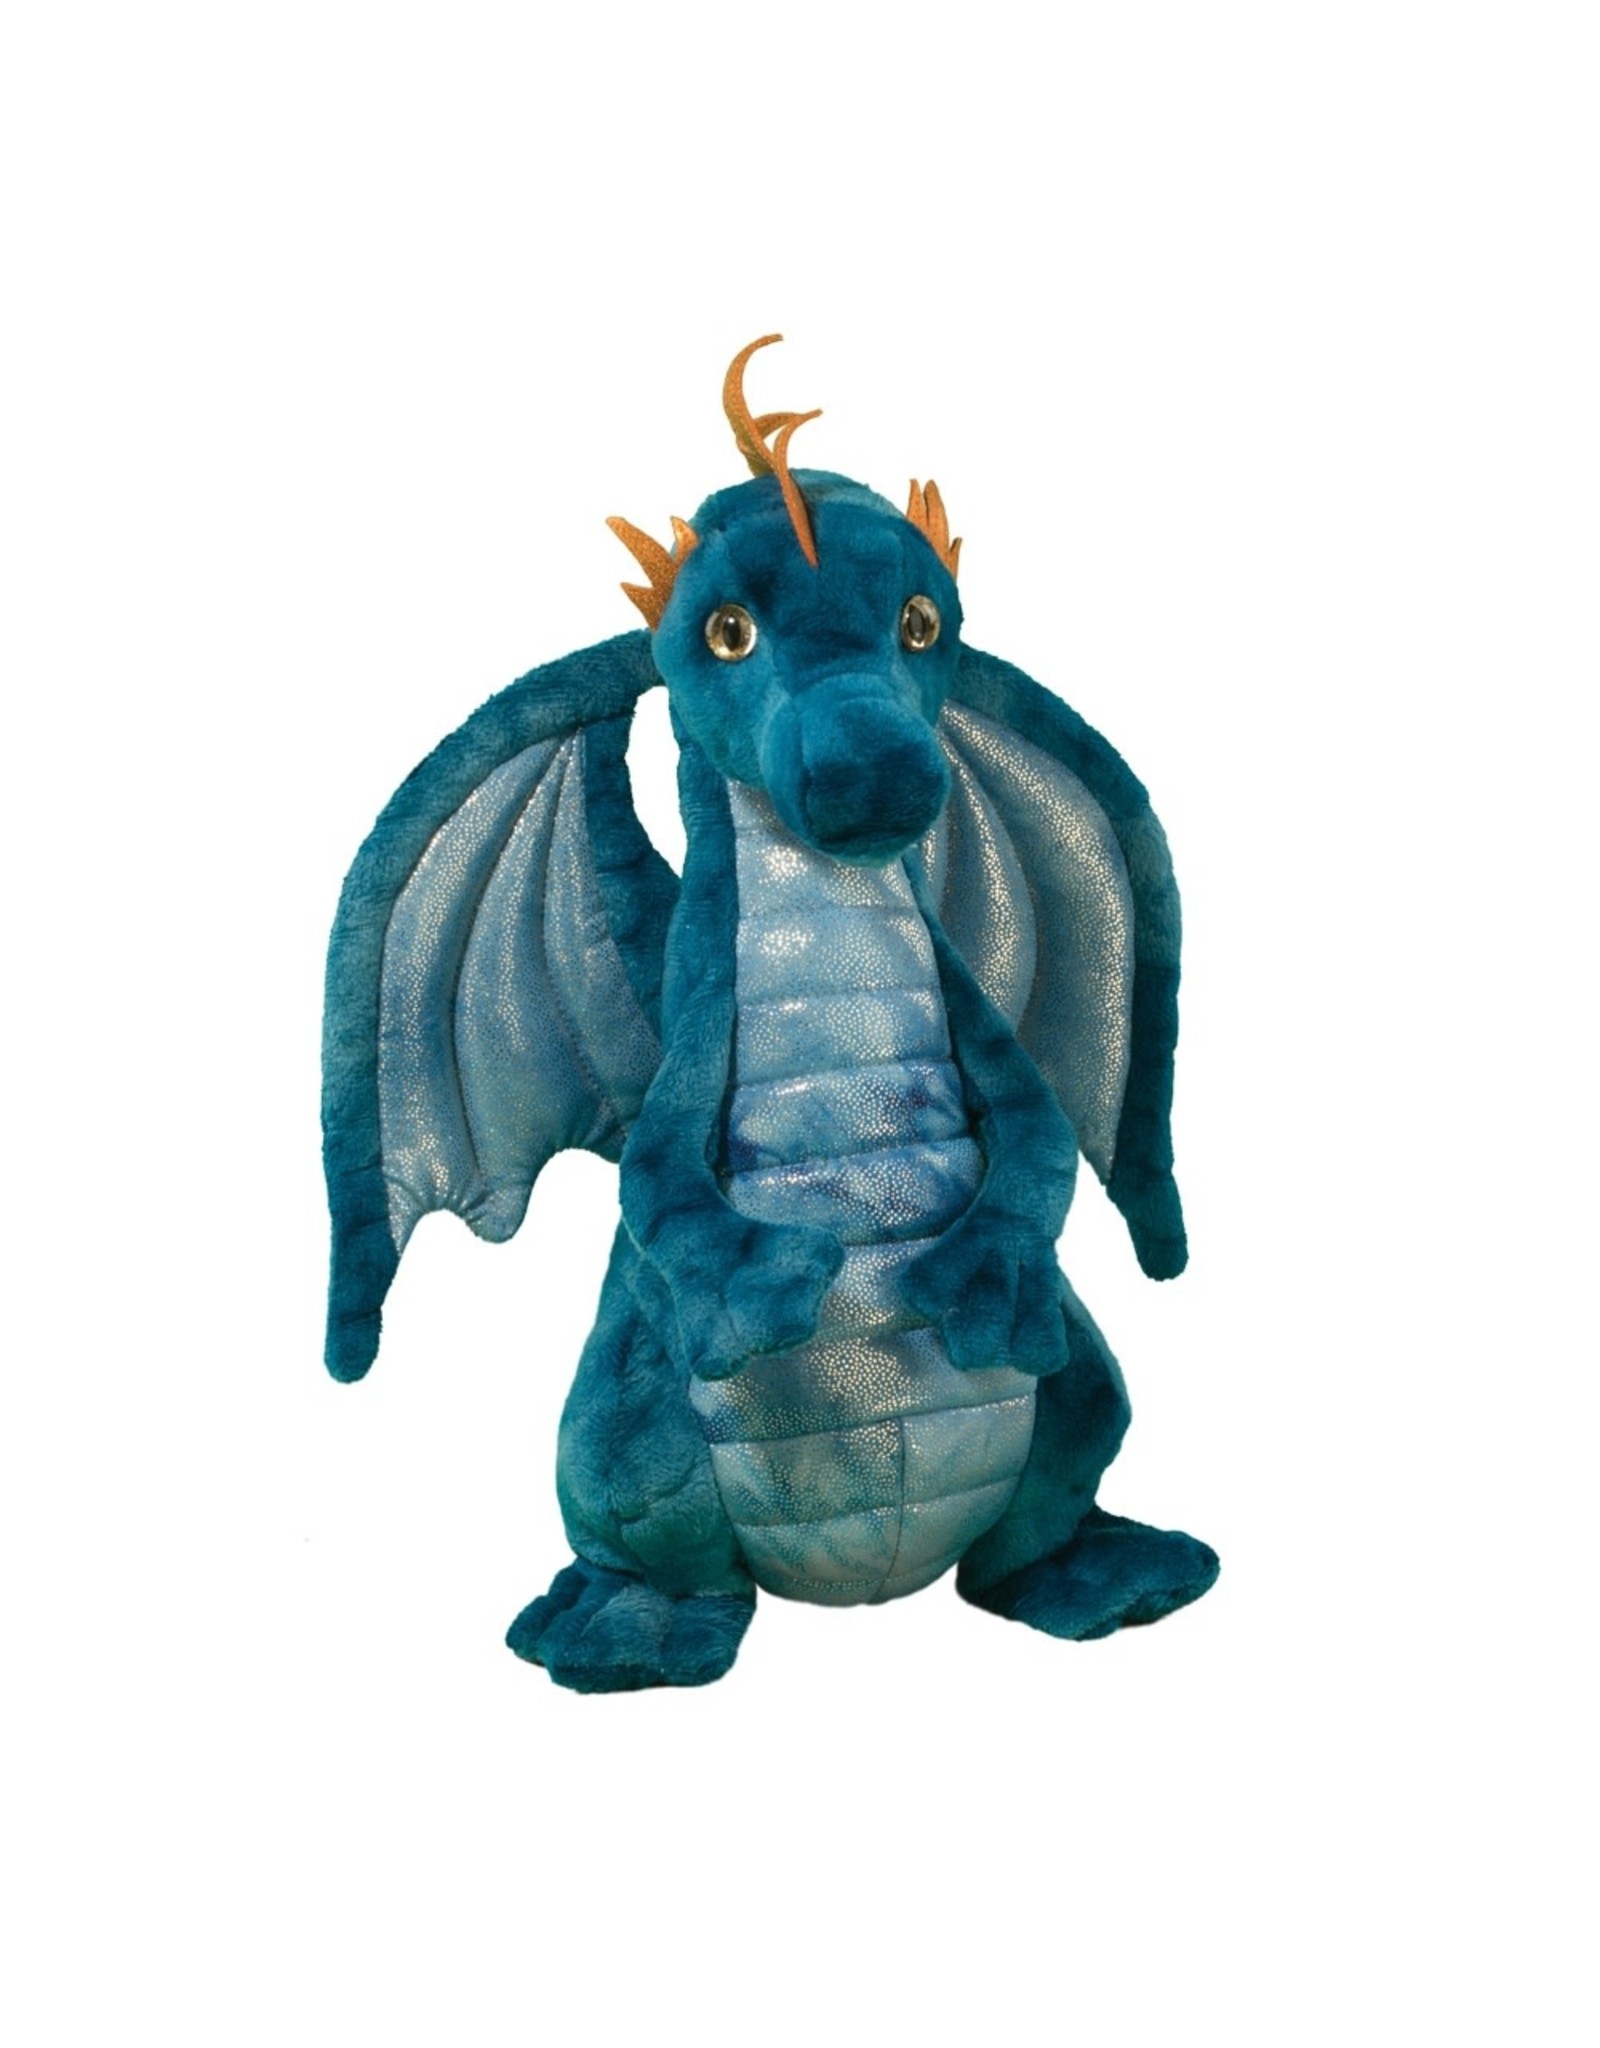 Zander the Blue Dragon 12"